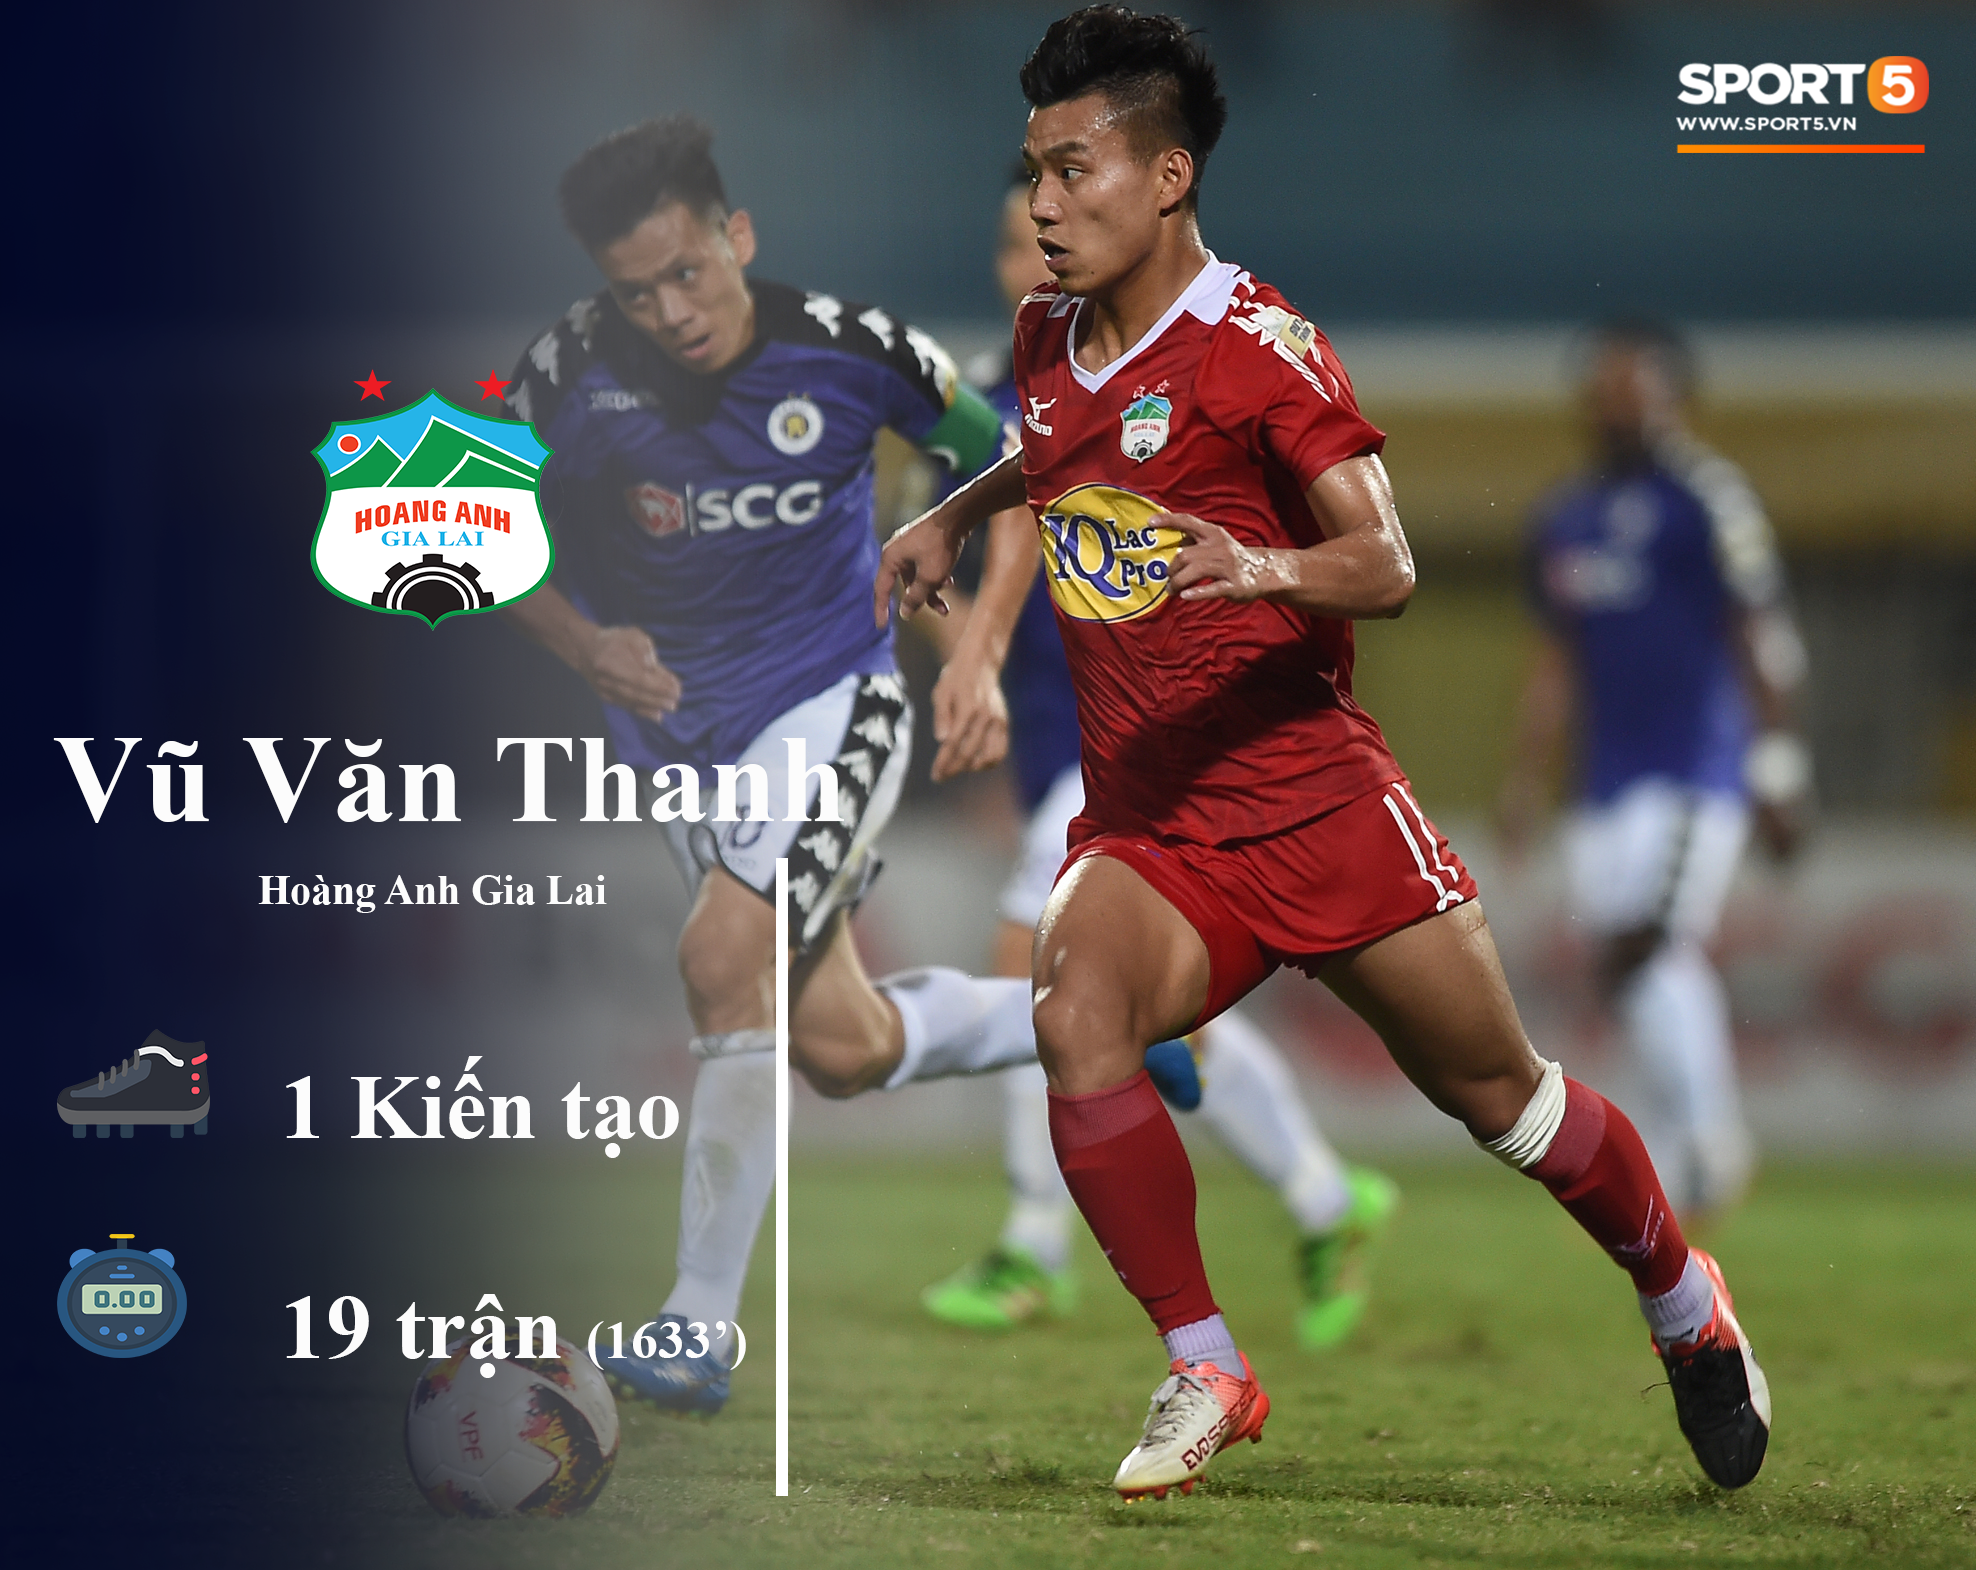 Những thống kê đáng chú ý của cầu thủ U23 Việt Nam (P1) - Ảnh 8.